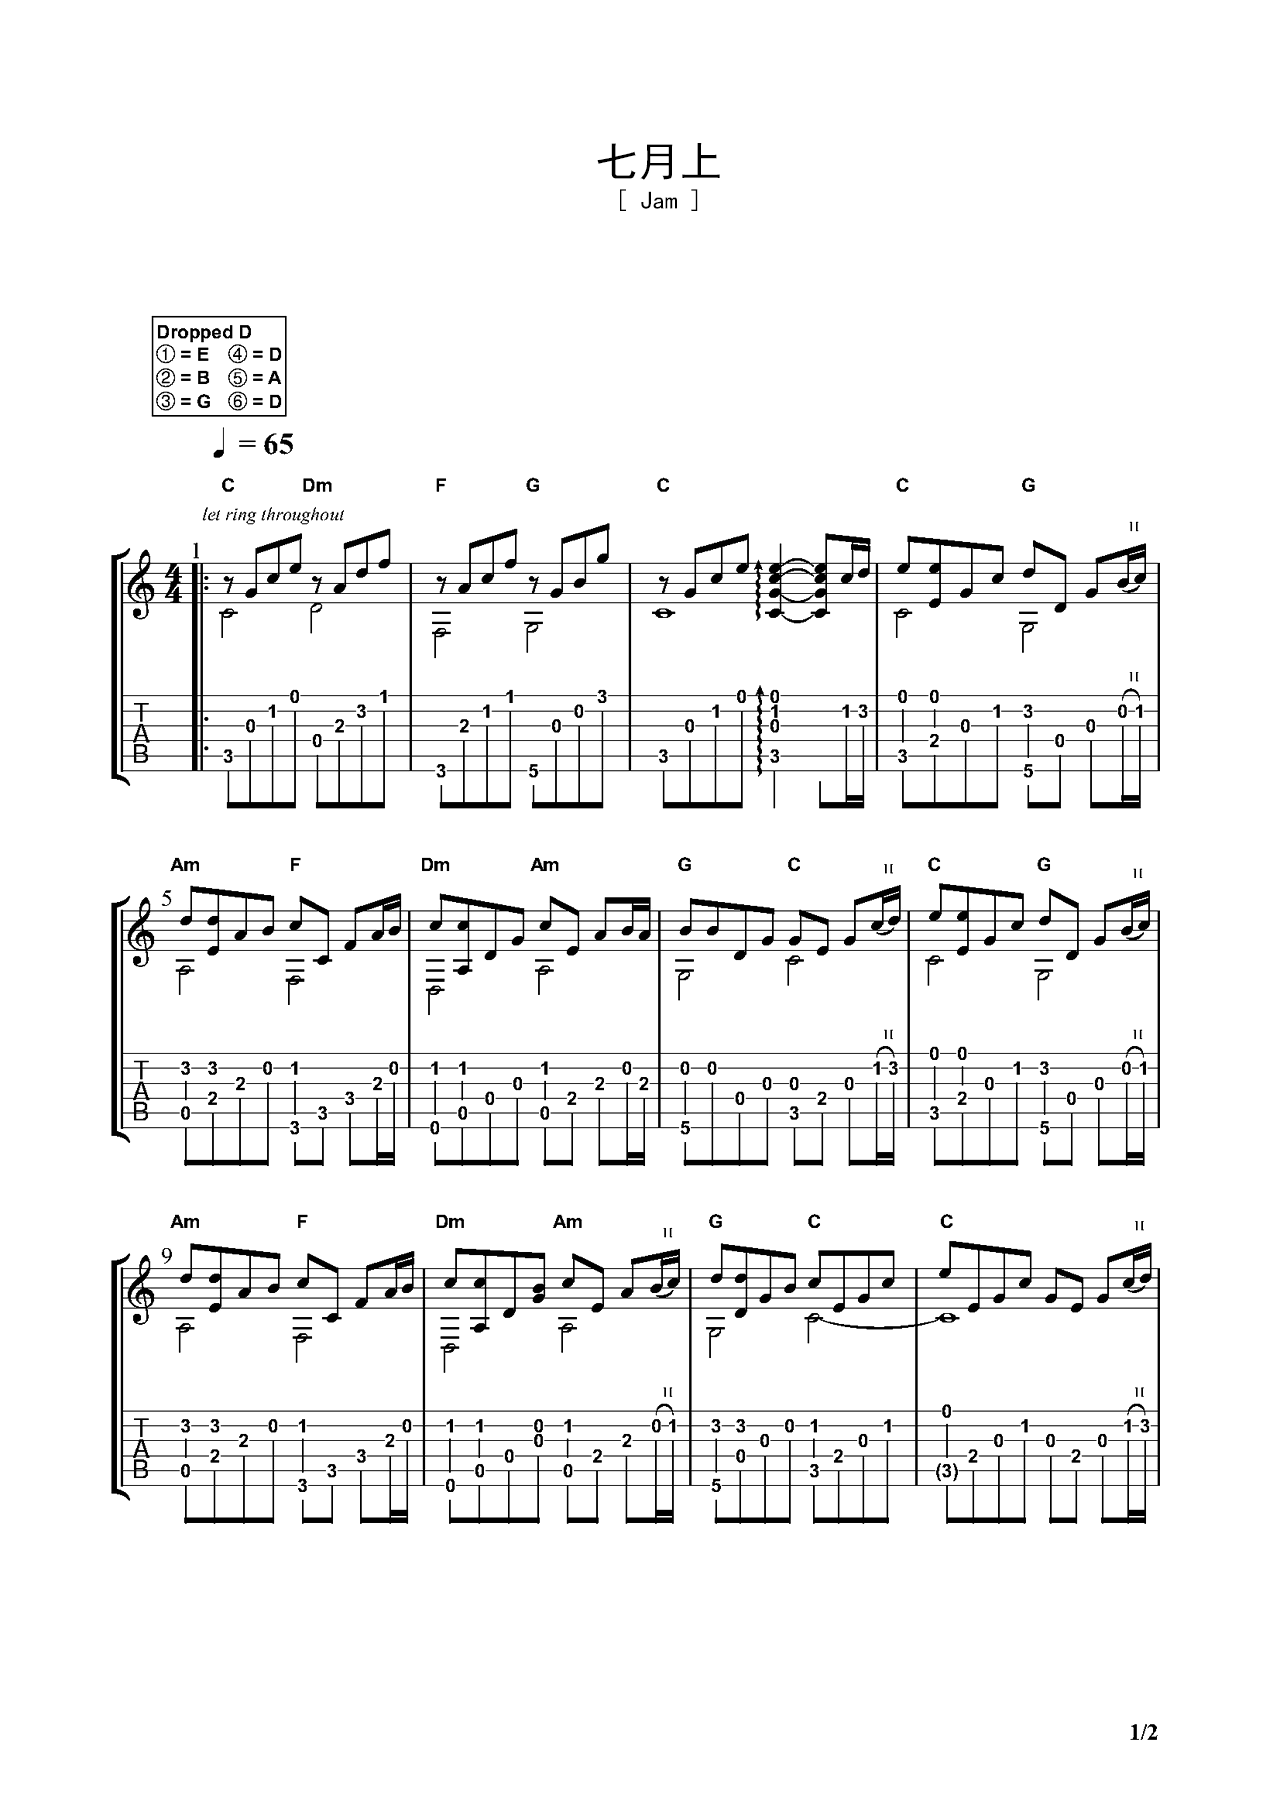 简易版《七月上》钢琴谱 - JAM阿敬C调简谱版 - 入门完整版曲谱 - 钢琴简谱